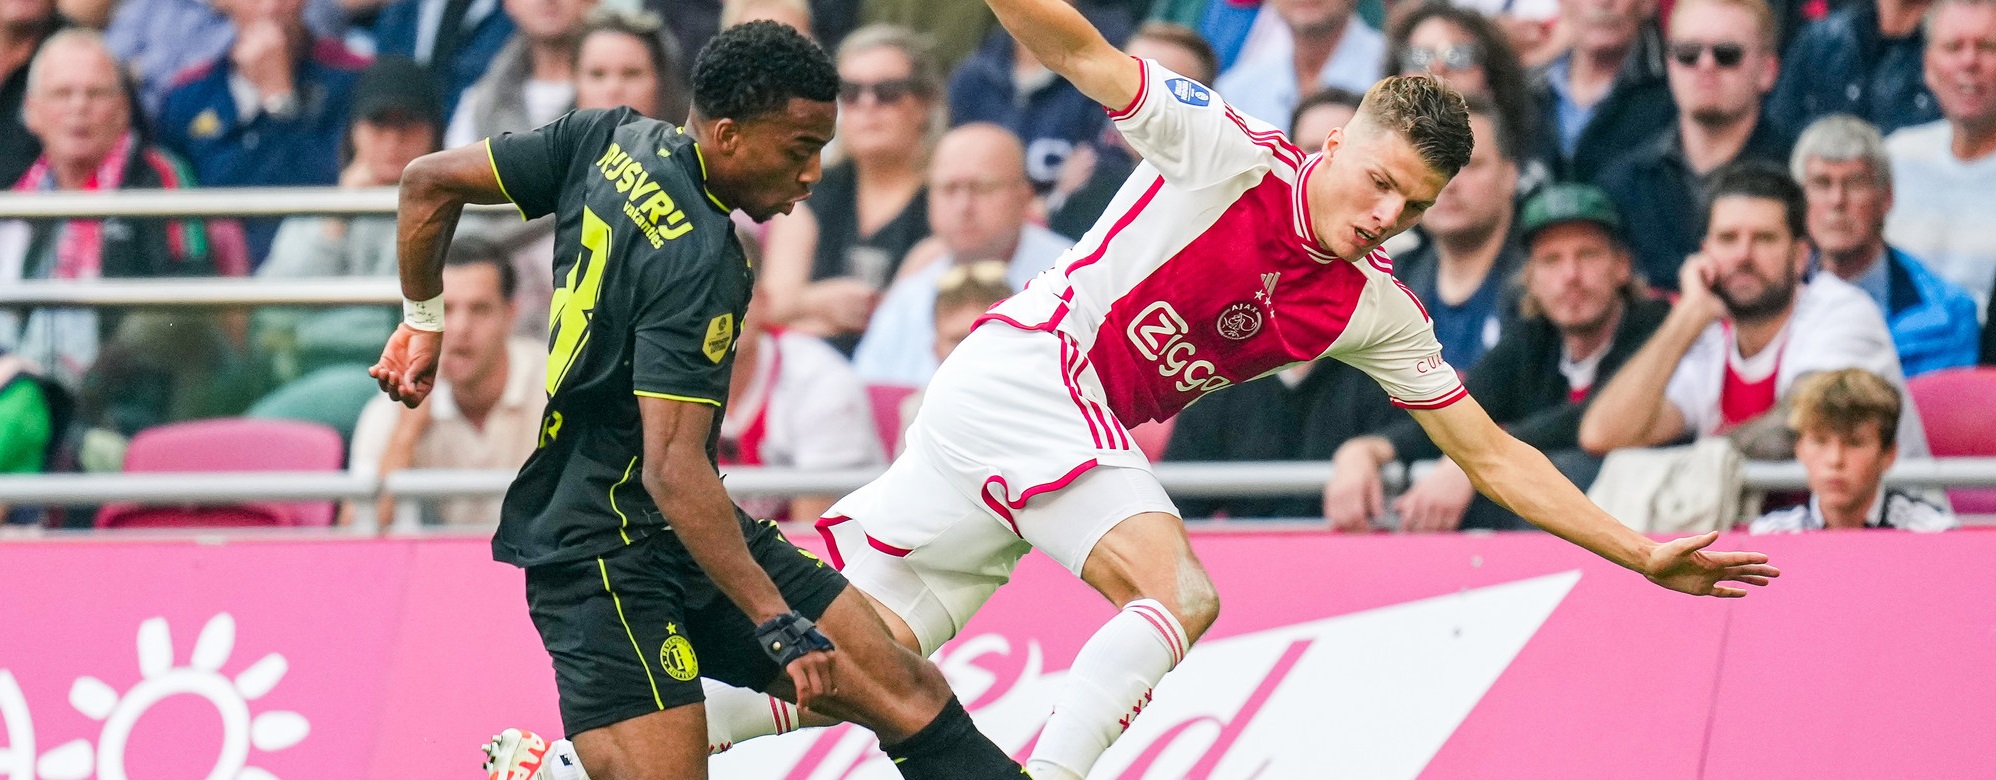 Laga Ajax-Feyenoord Dilanjutkan Tanpa Penonton Setelah Sempat Ditunda Karena Suar